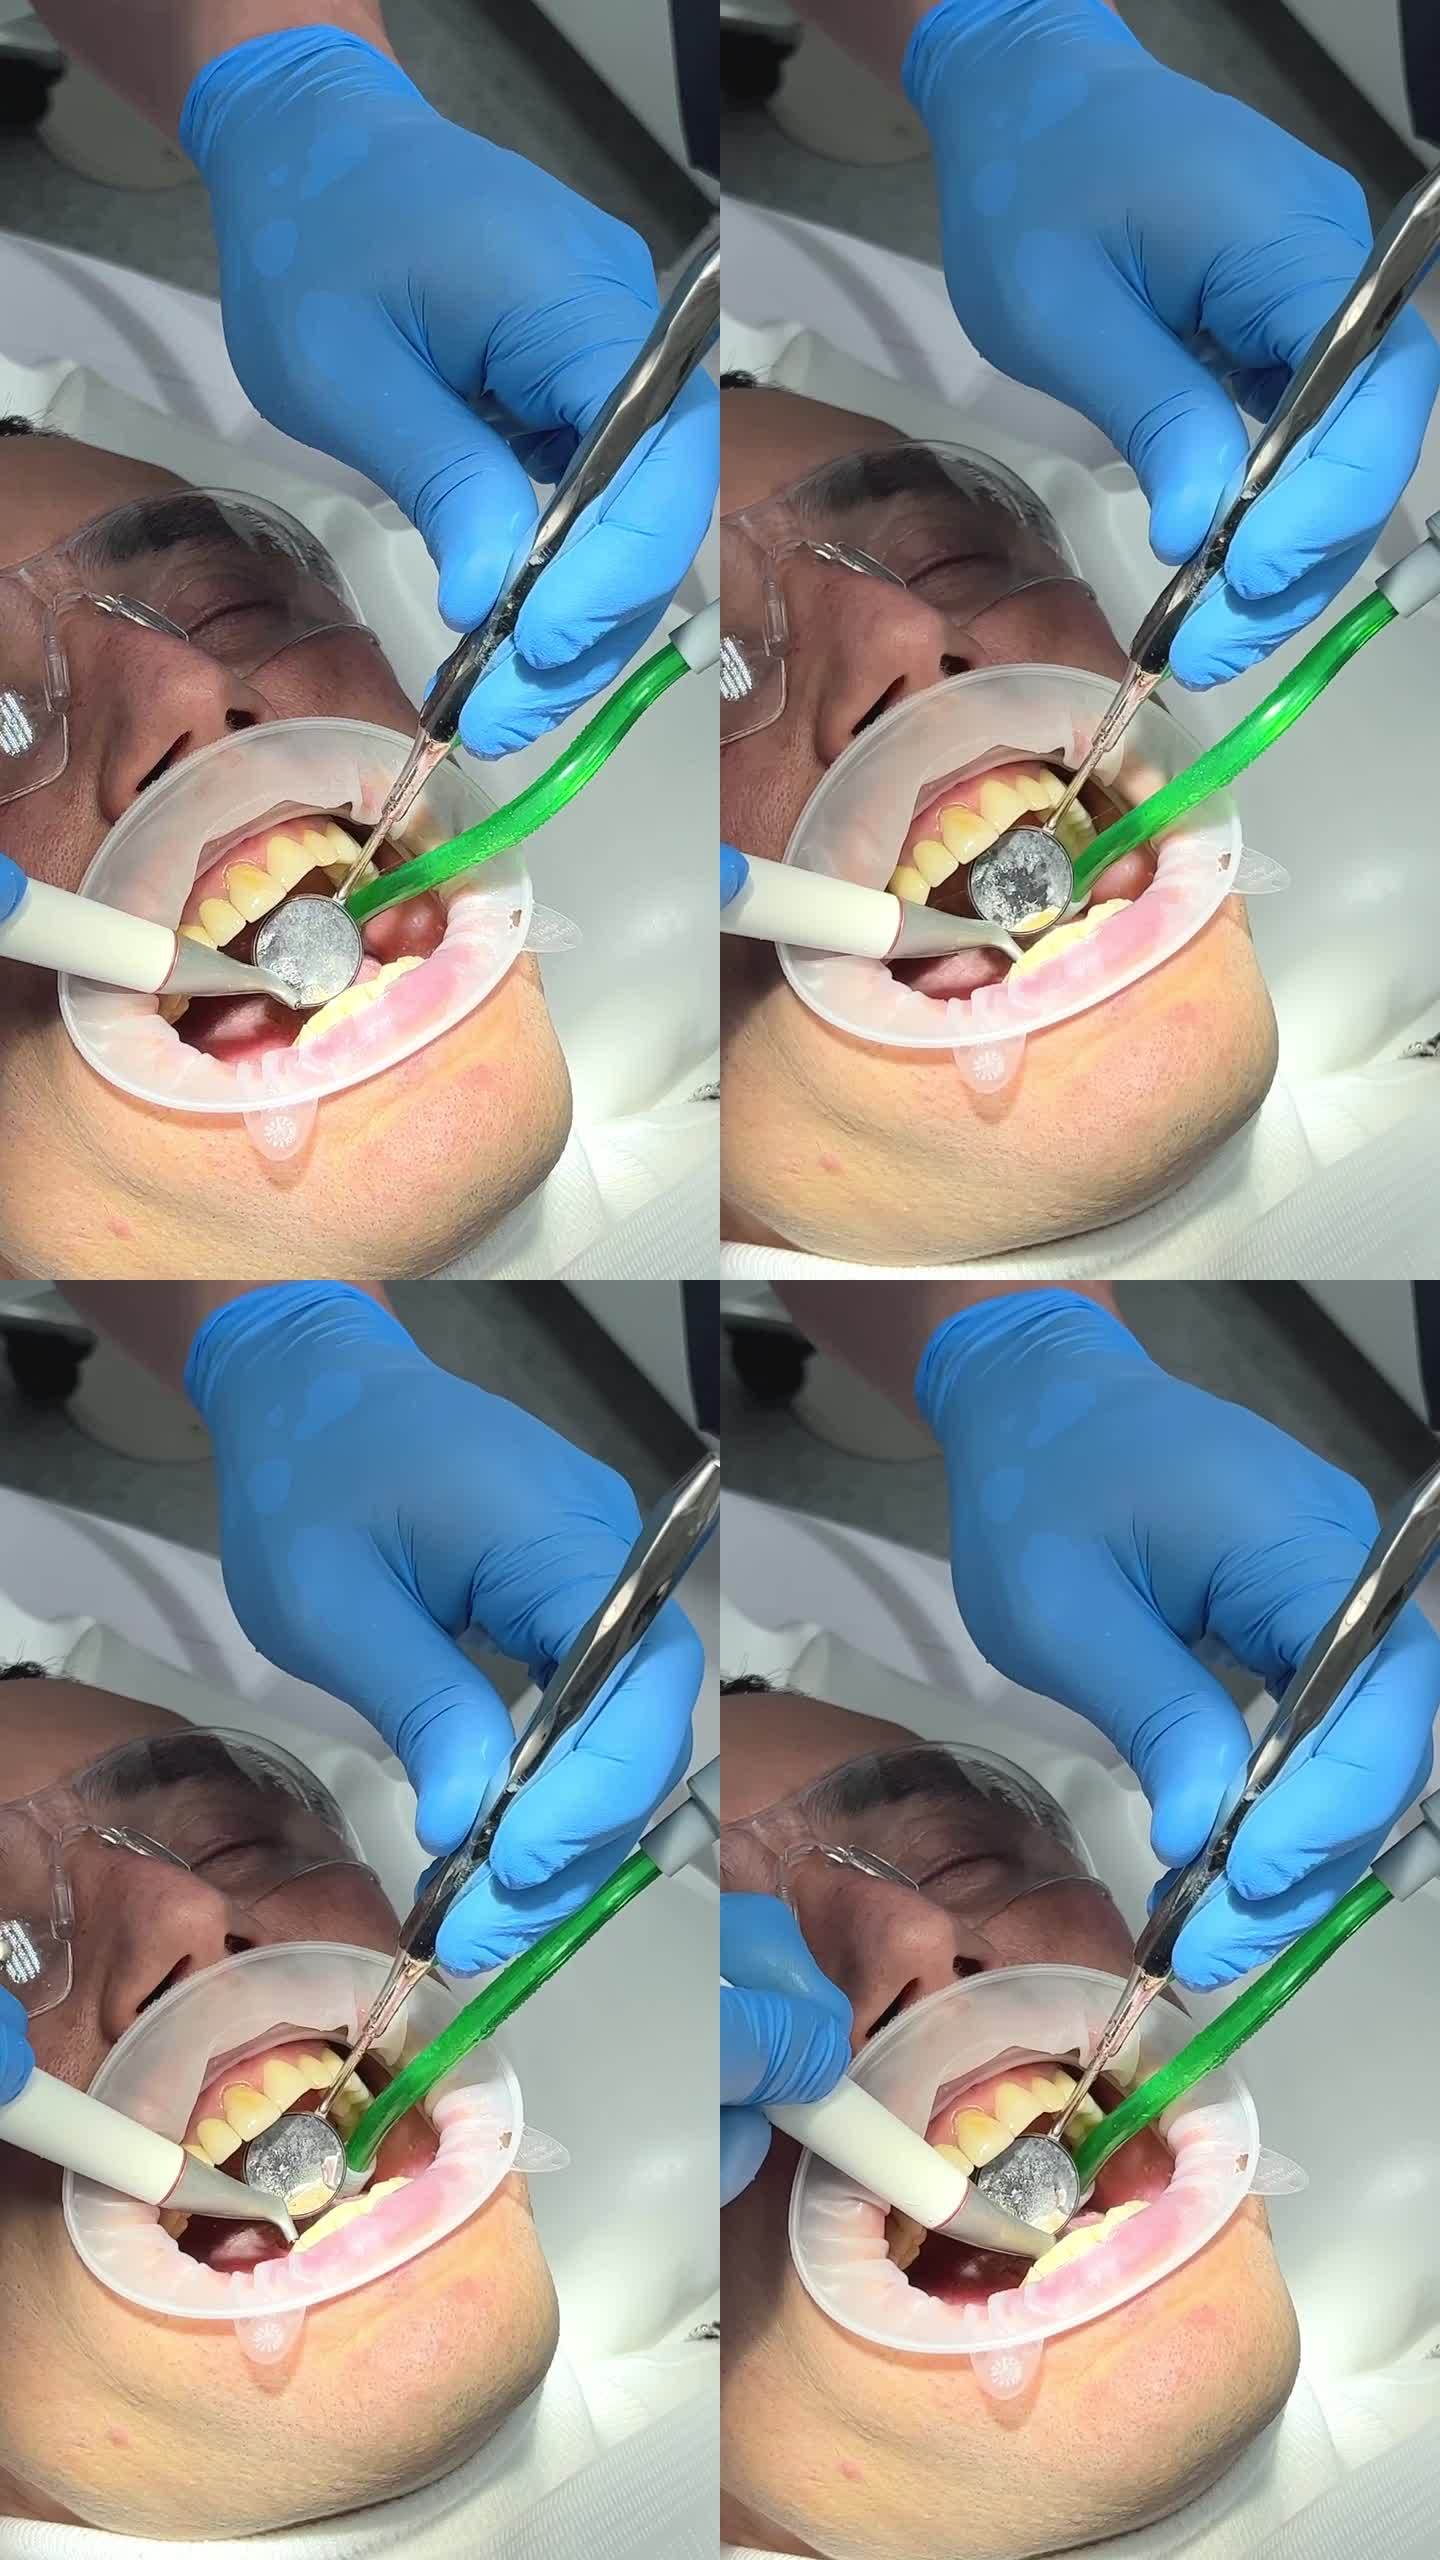 牙齿清洁中年男子牙菌斑牙石在口腔、嘴唇和脸颊牵开医生4手清洁牙齿吸菌斑可见蓝色无菌手套治疗牙科诊所最